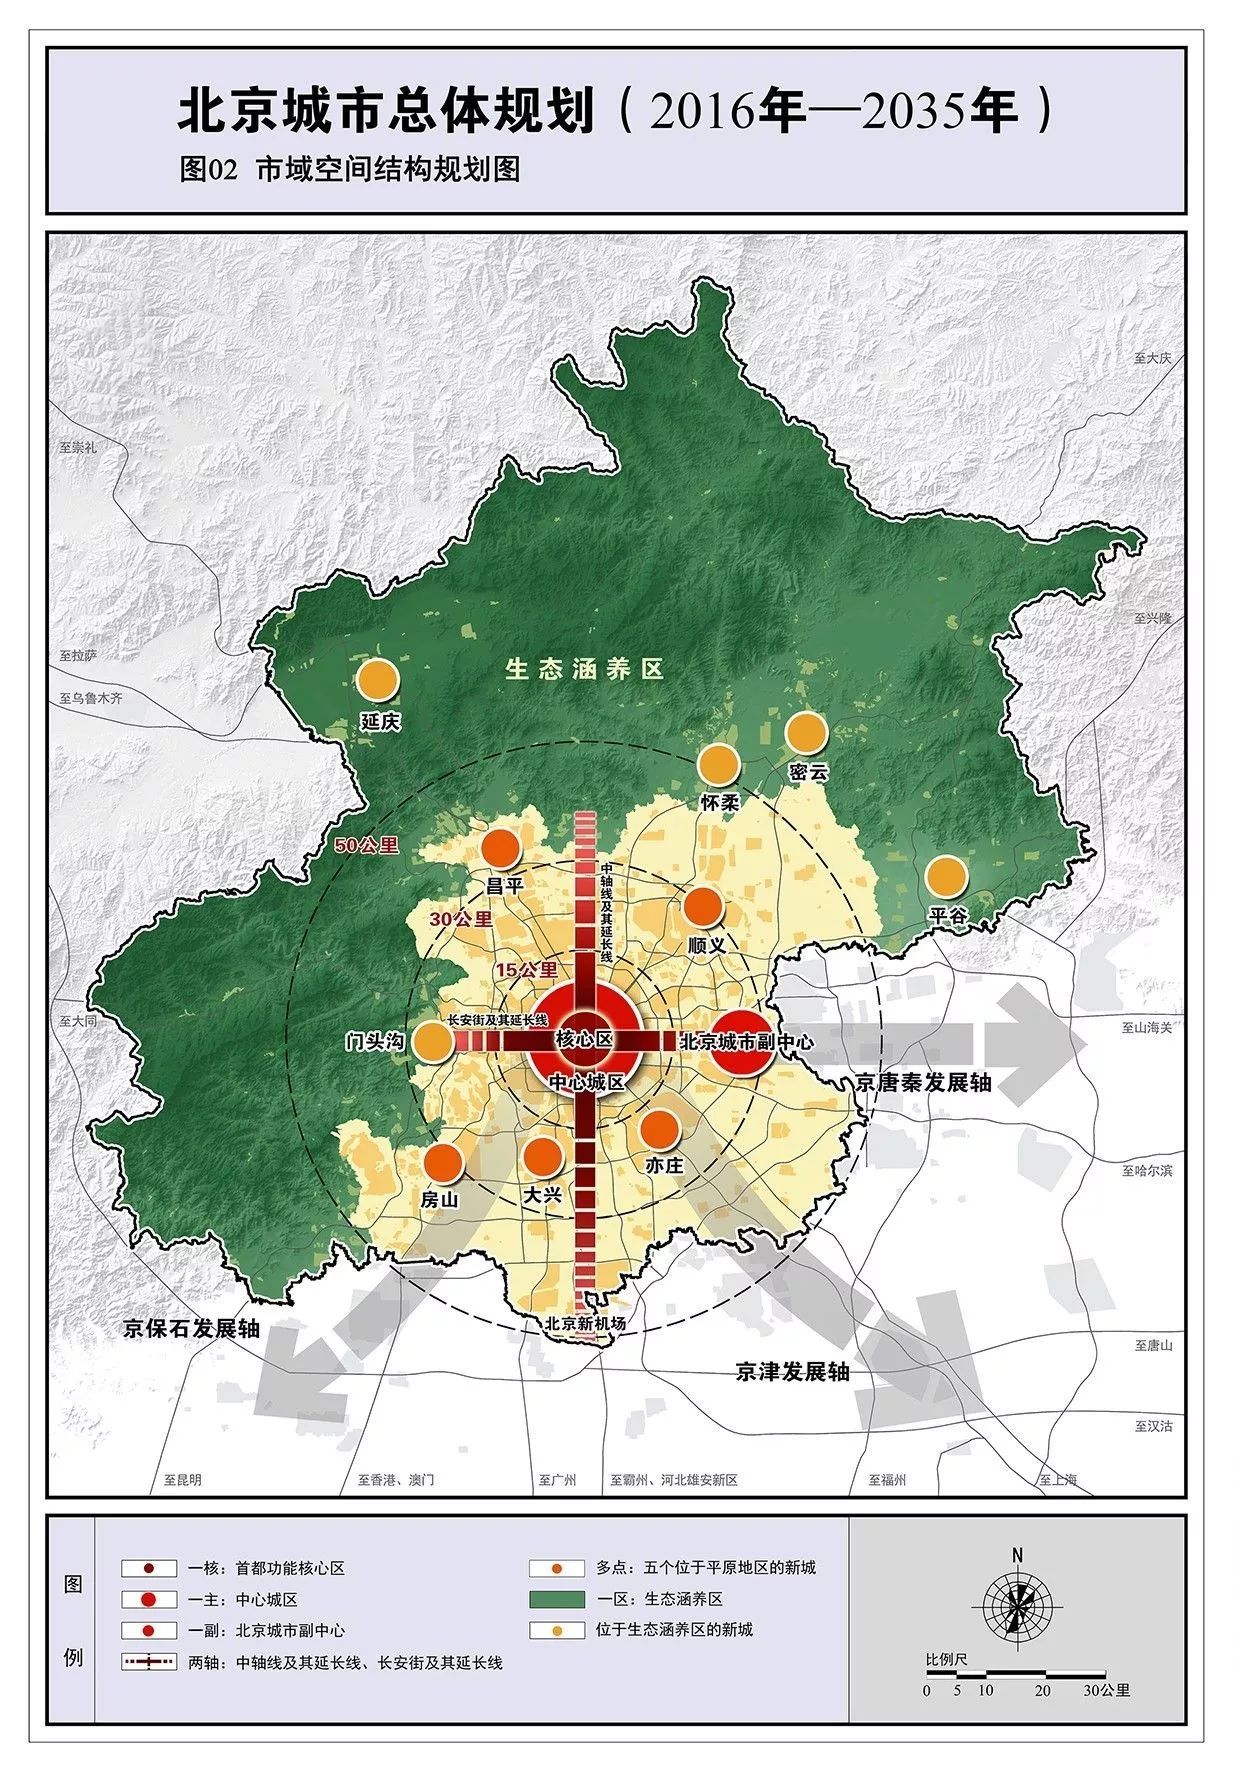 北京发布城市总体规划 对接支持河北雄安新区规划建设